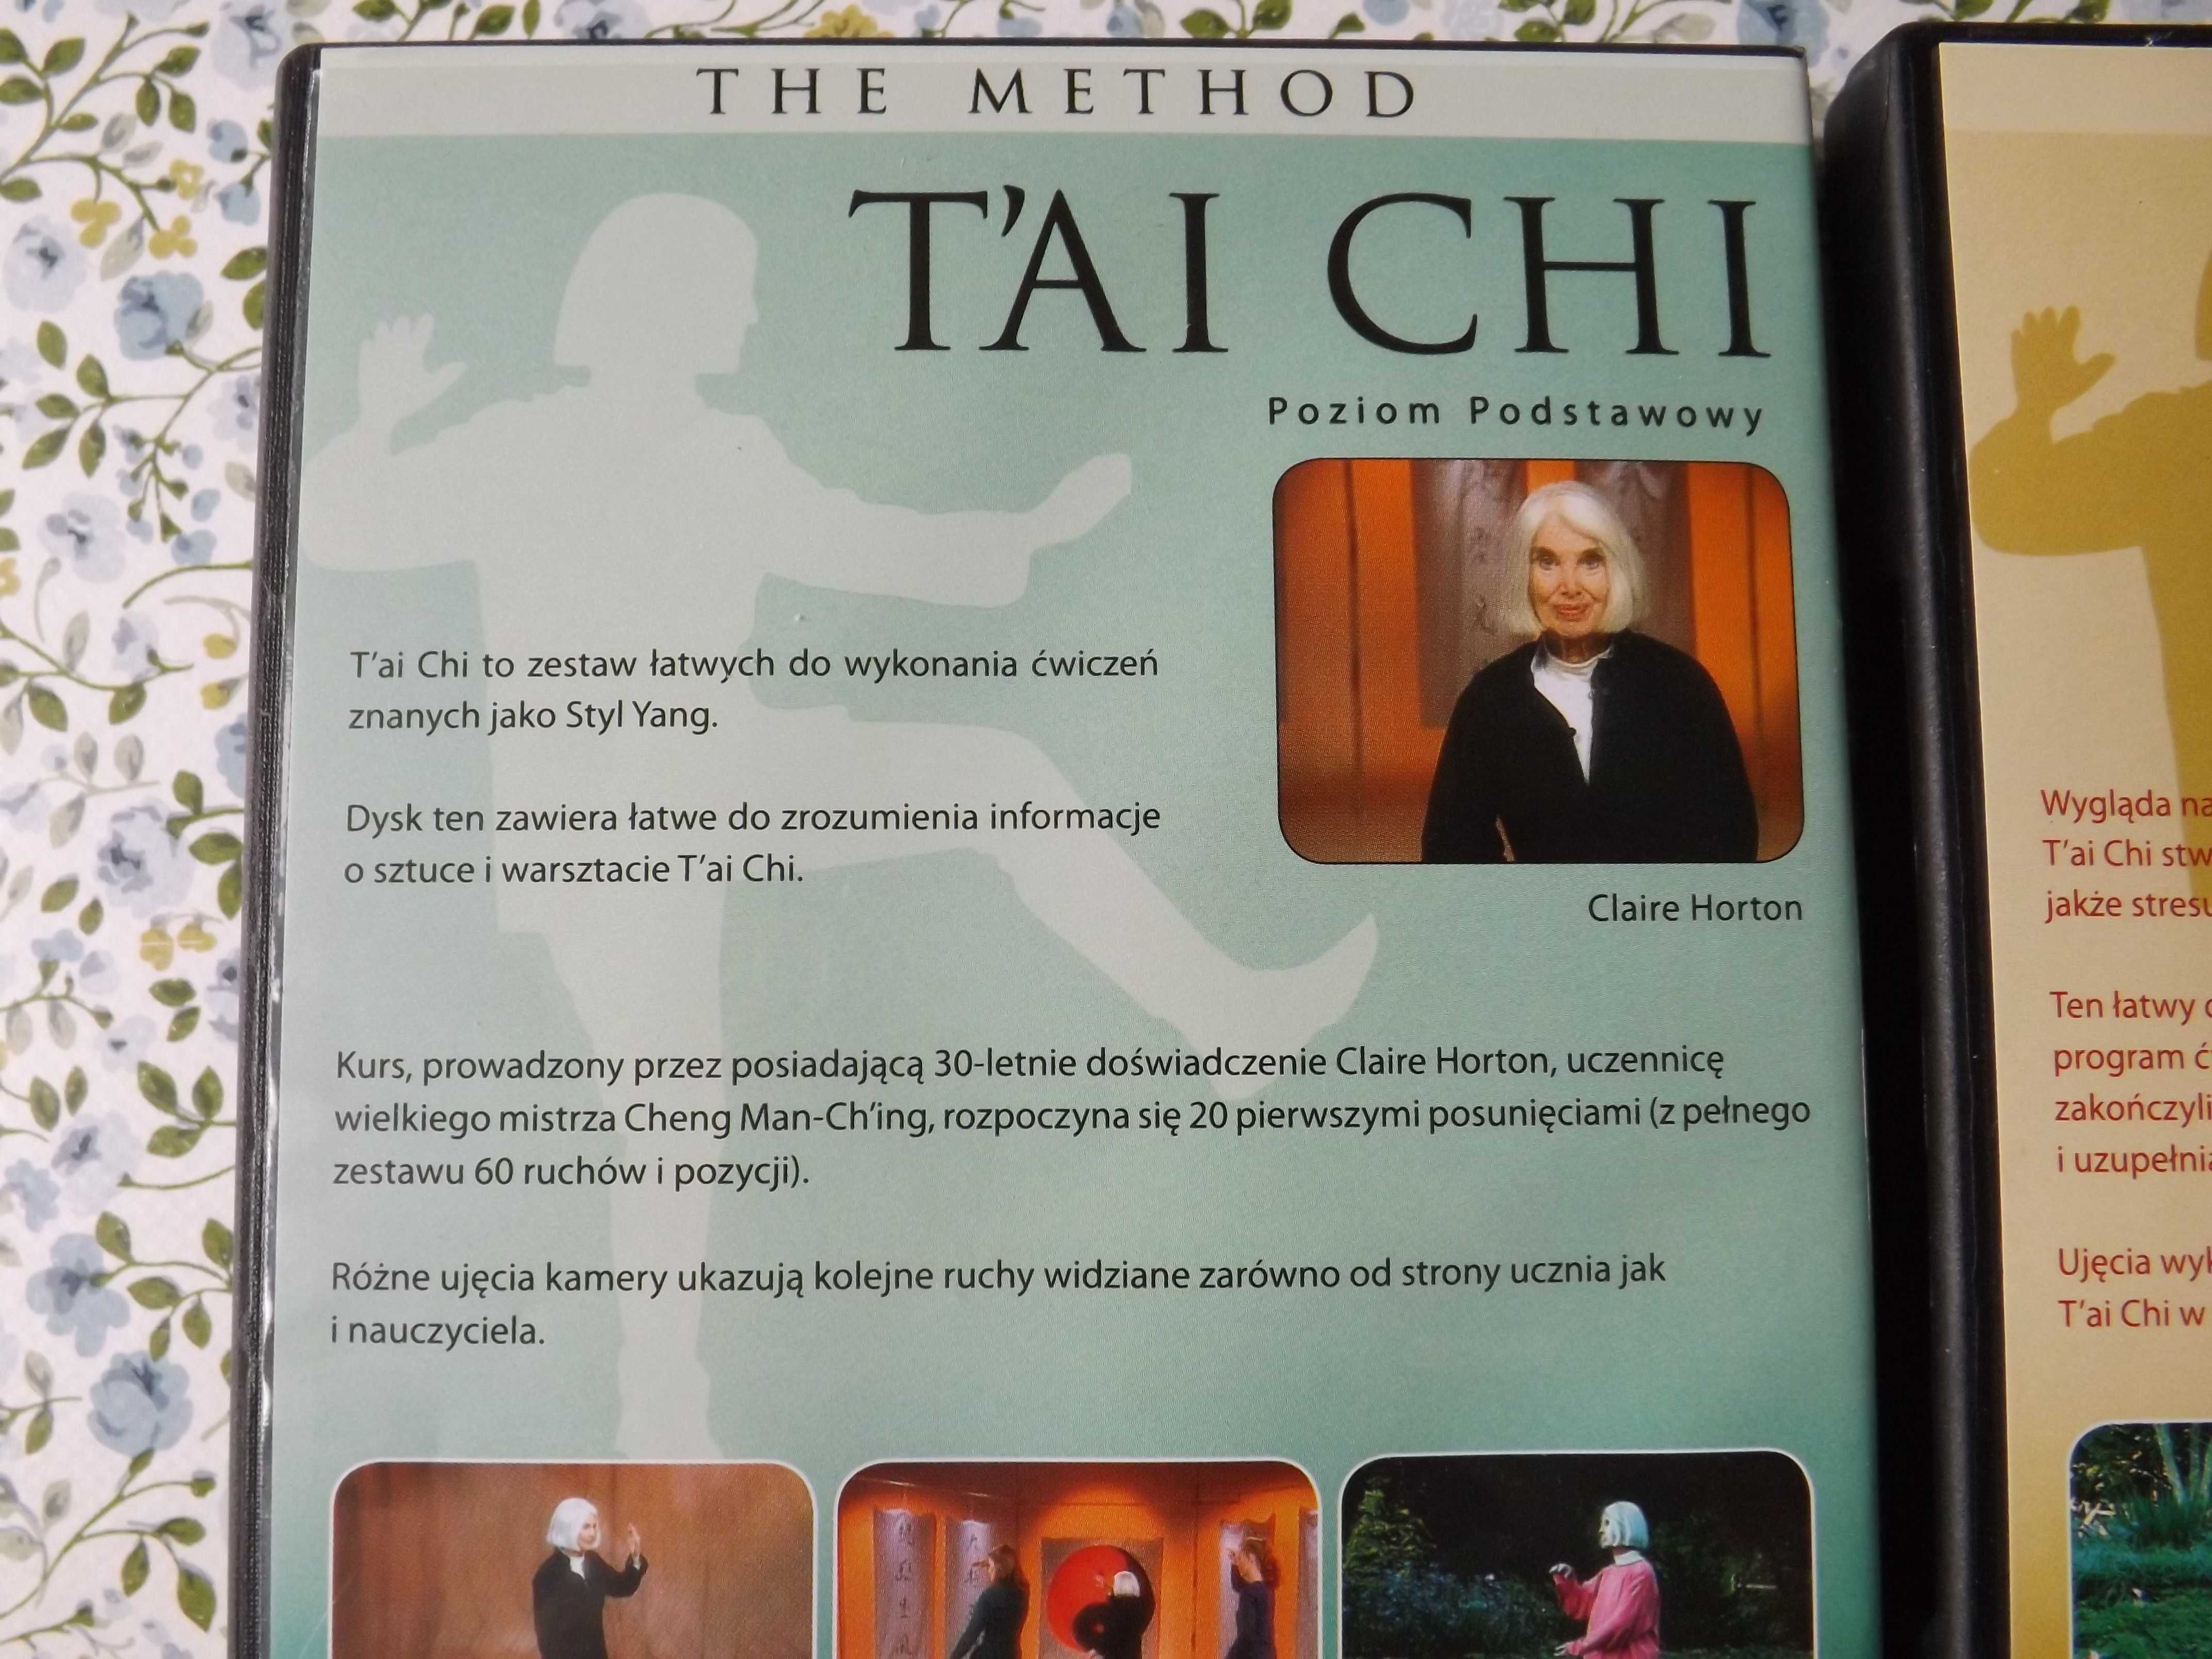 Tai Chi  ćwiczenia relaksacyjne  podstawowe i średnie 2 dvd